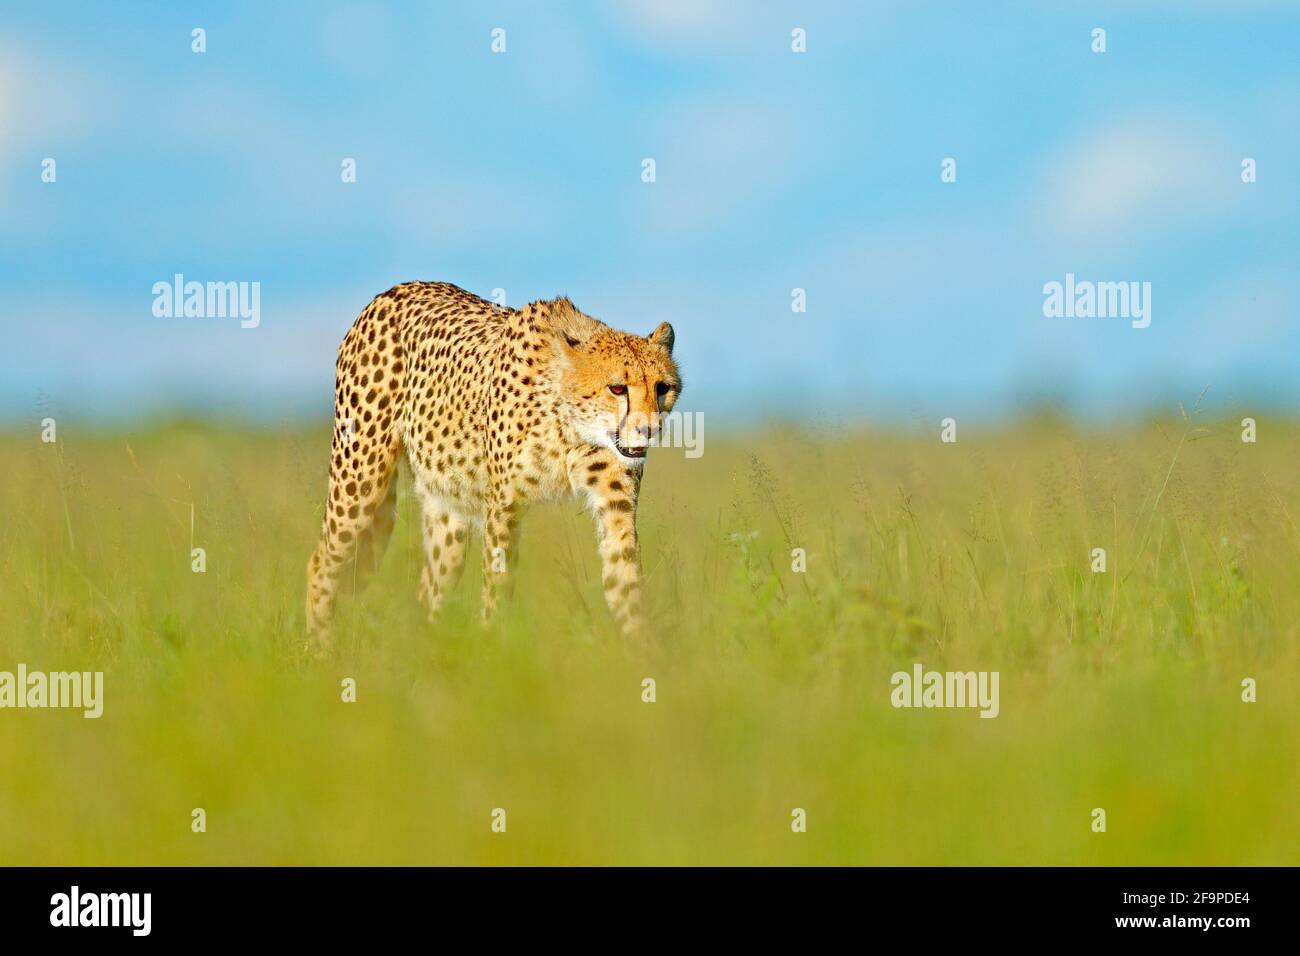 Gepard, Acinonyx jubatus, Wildkatze. Schnellstes Säugetier an Land, Botswana, Afrika. Gepard im Gras, blauer Himmel mit Wolken. Gefleckte Wildkatze Stockfoto